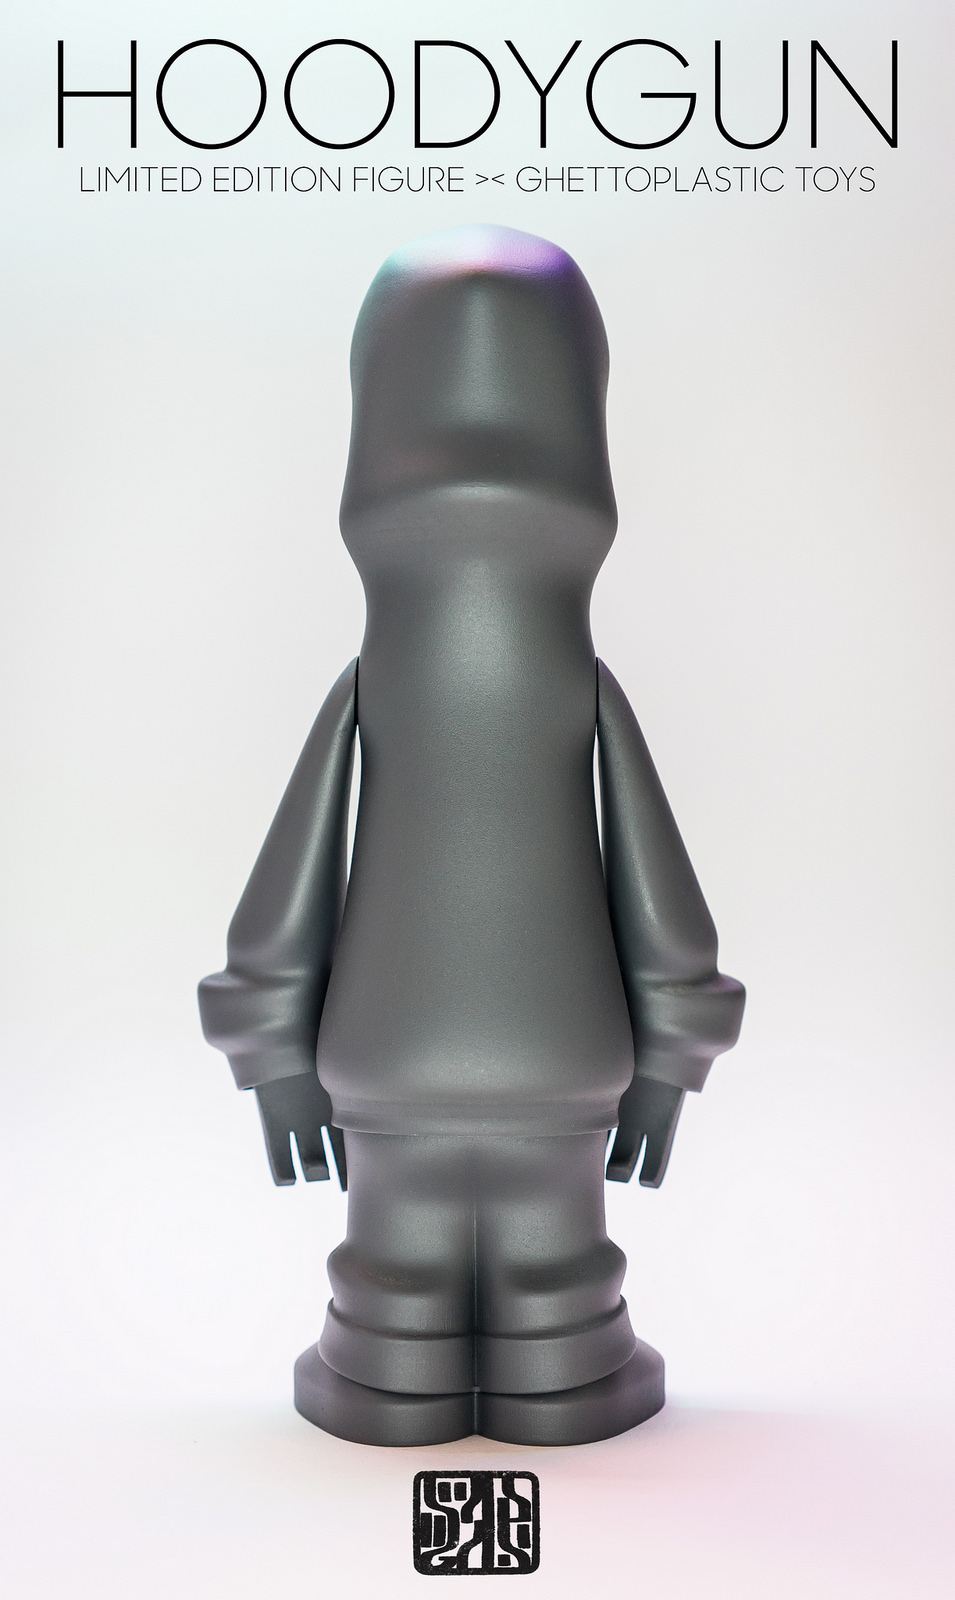 HUGO BERMUDEZ RESTINPAINT concept design 3D modeling 3d model CHARACTER 3d print hoodygun ghettoplastic toy custom figure resin vinyl